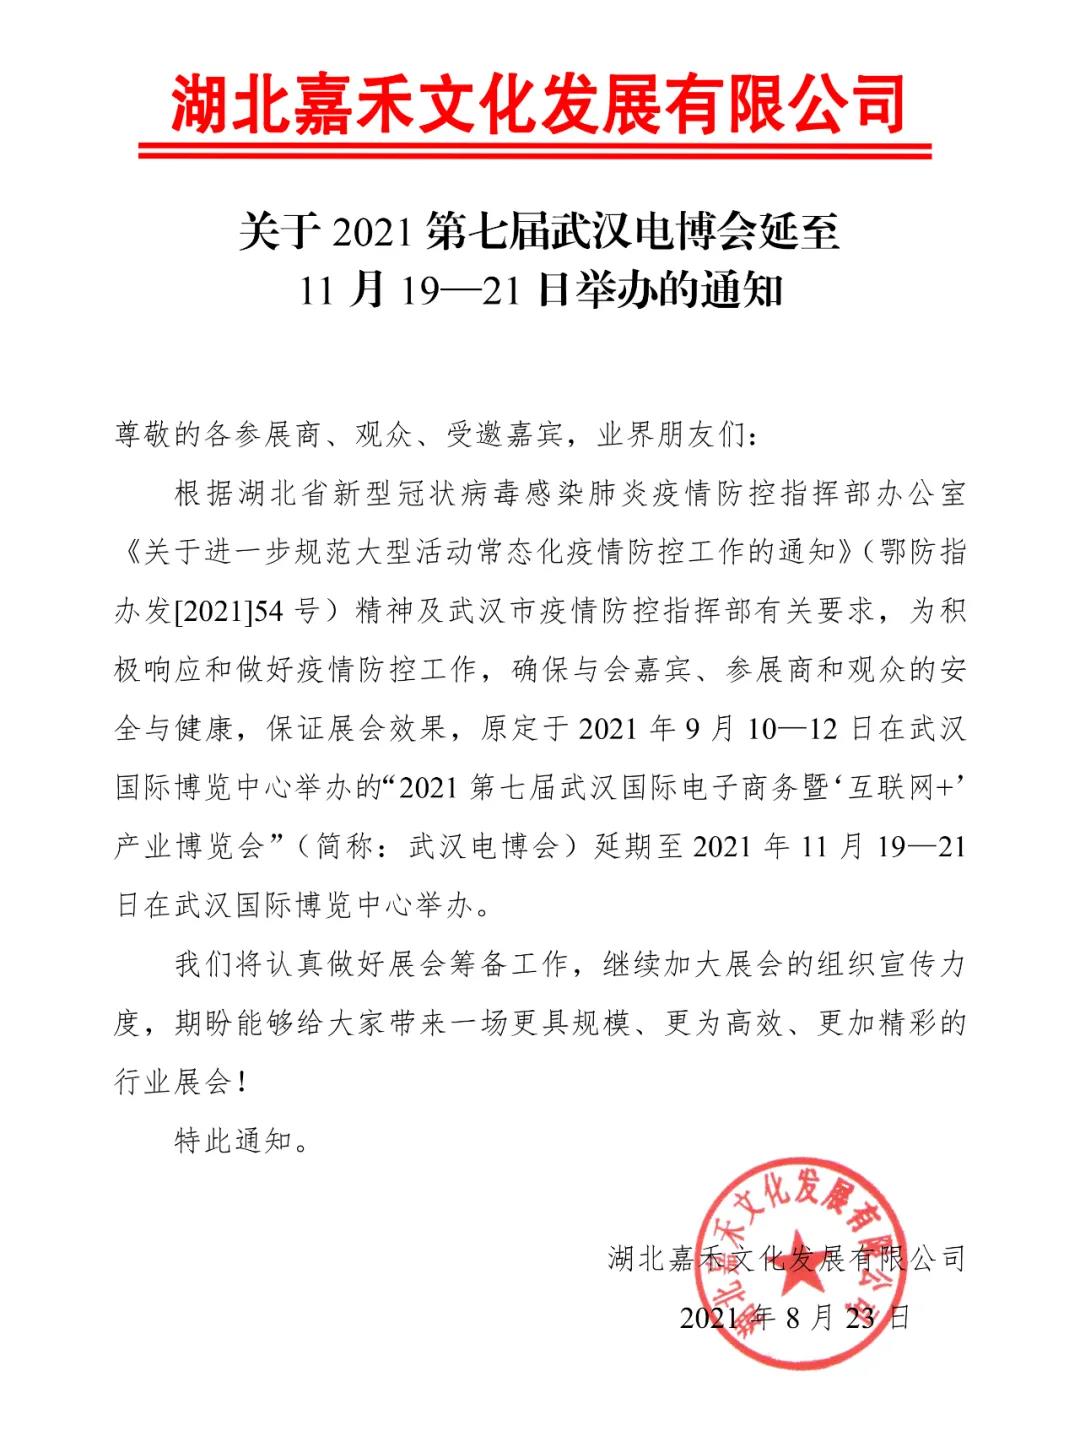 关于2021第七届武汉电博会延至11月19—21日举办的通知